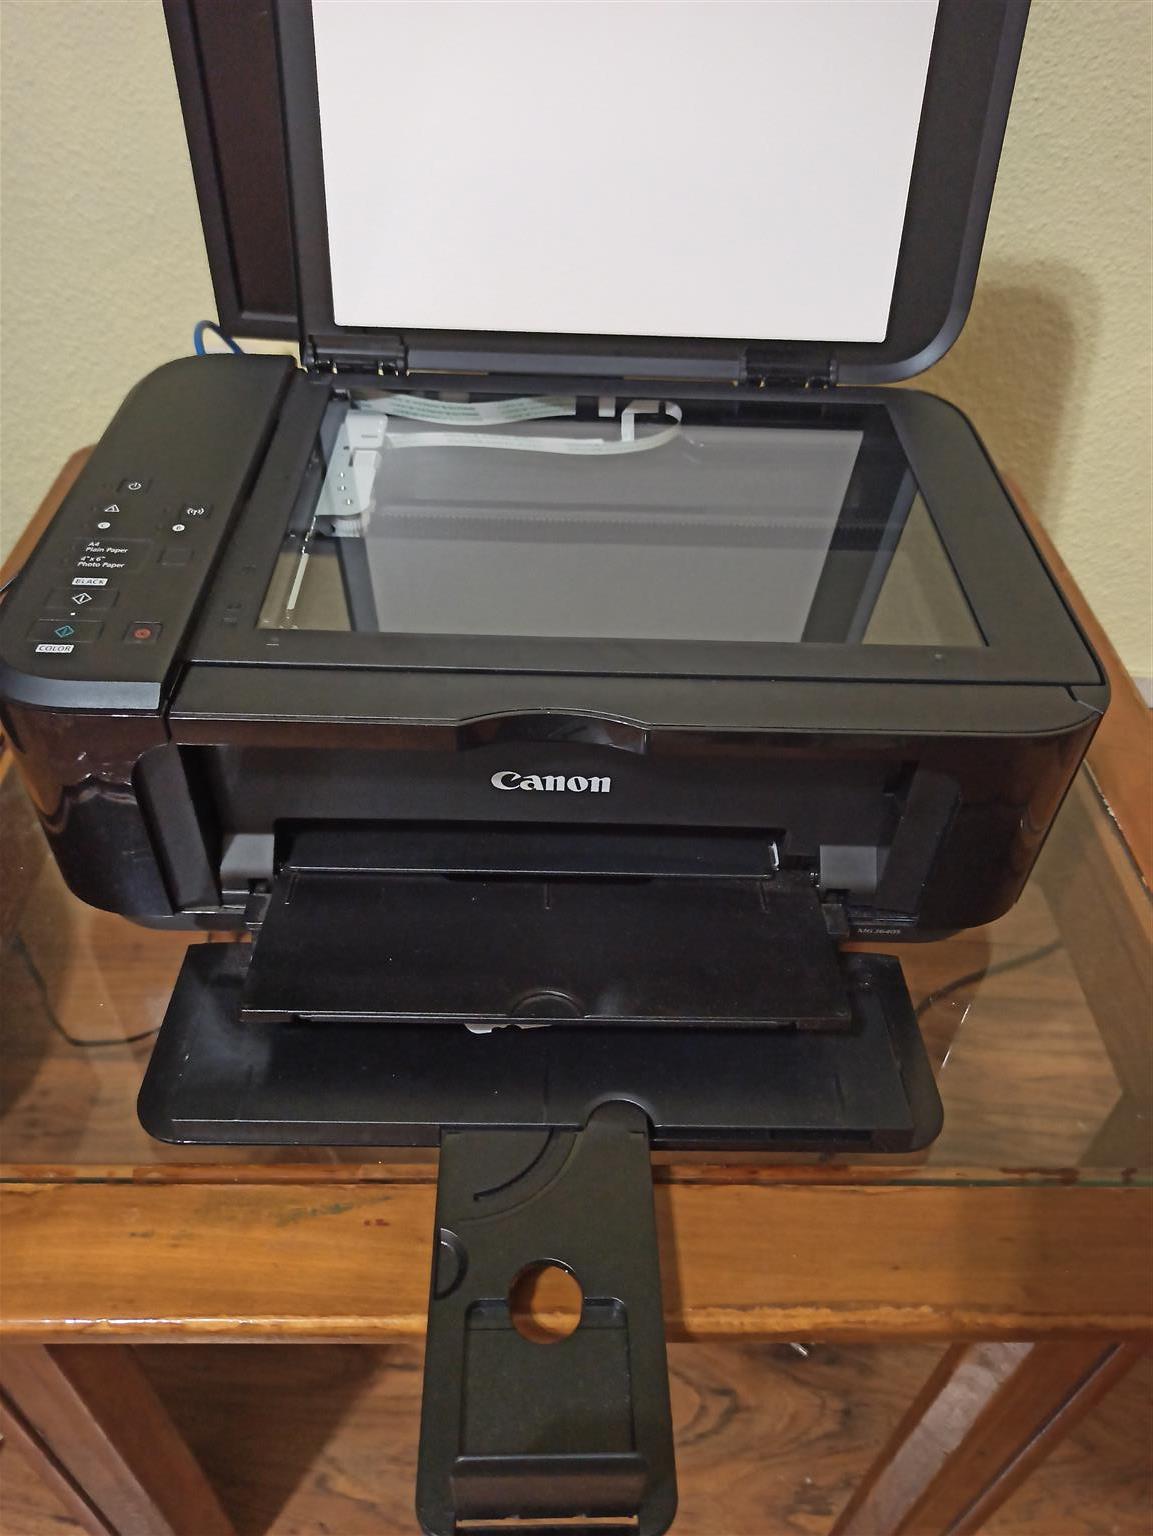 Canon Pixma MG3640 Black All-In-One Printer